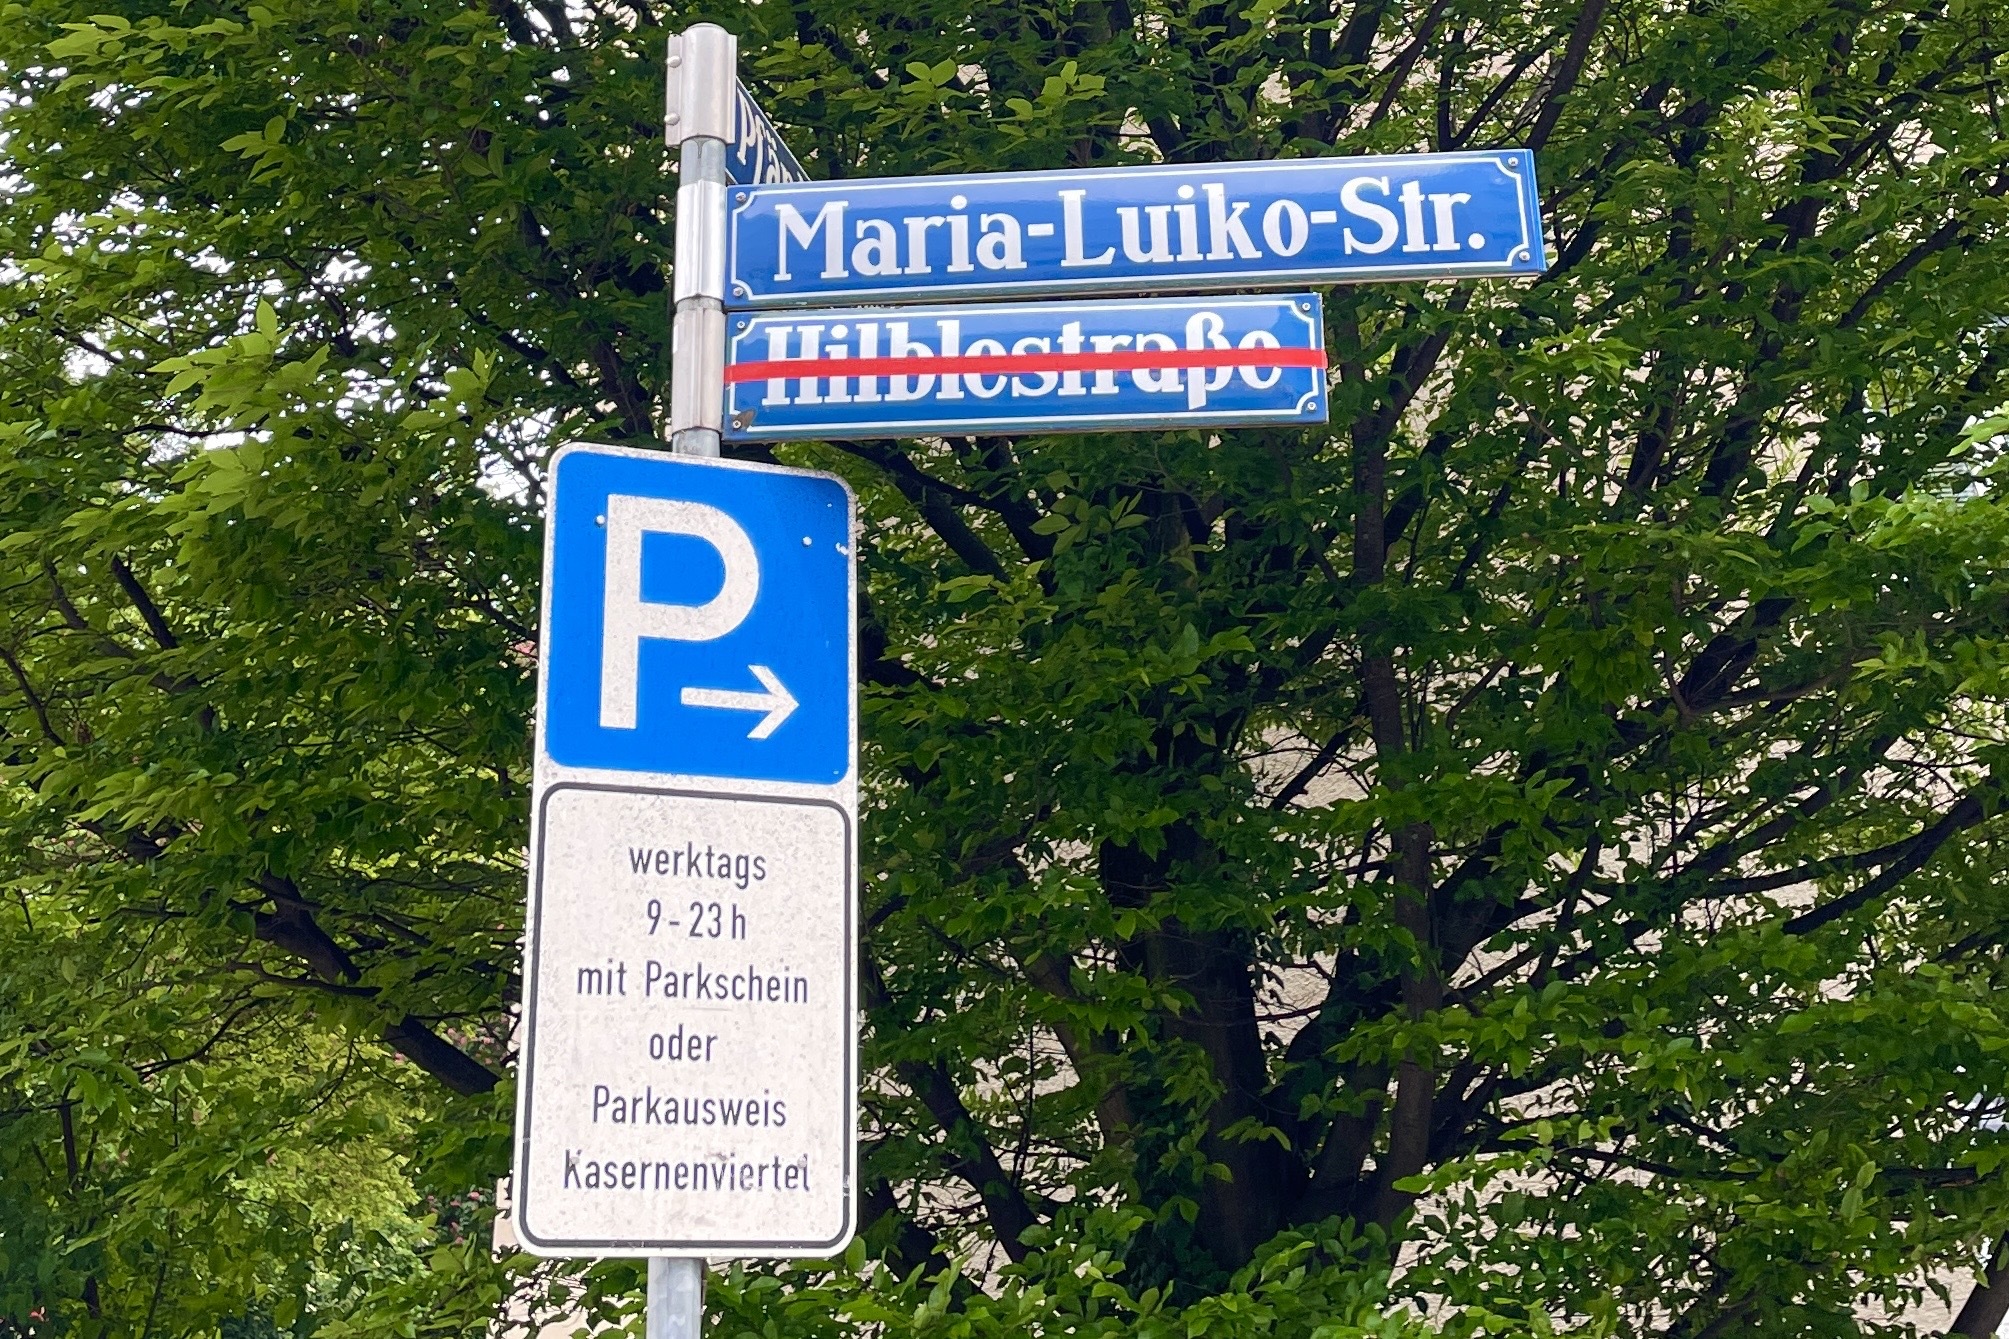 #München hakt nach: Wann werden kritische Straßennamen umbenannt?